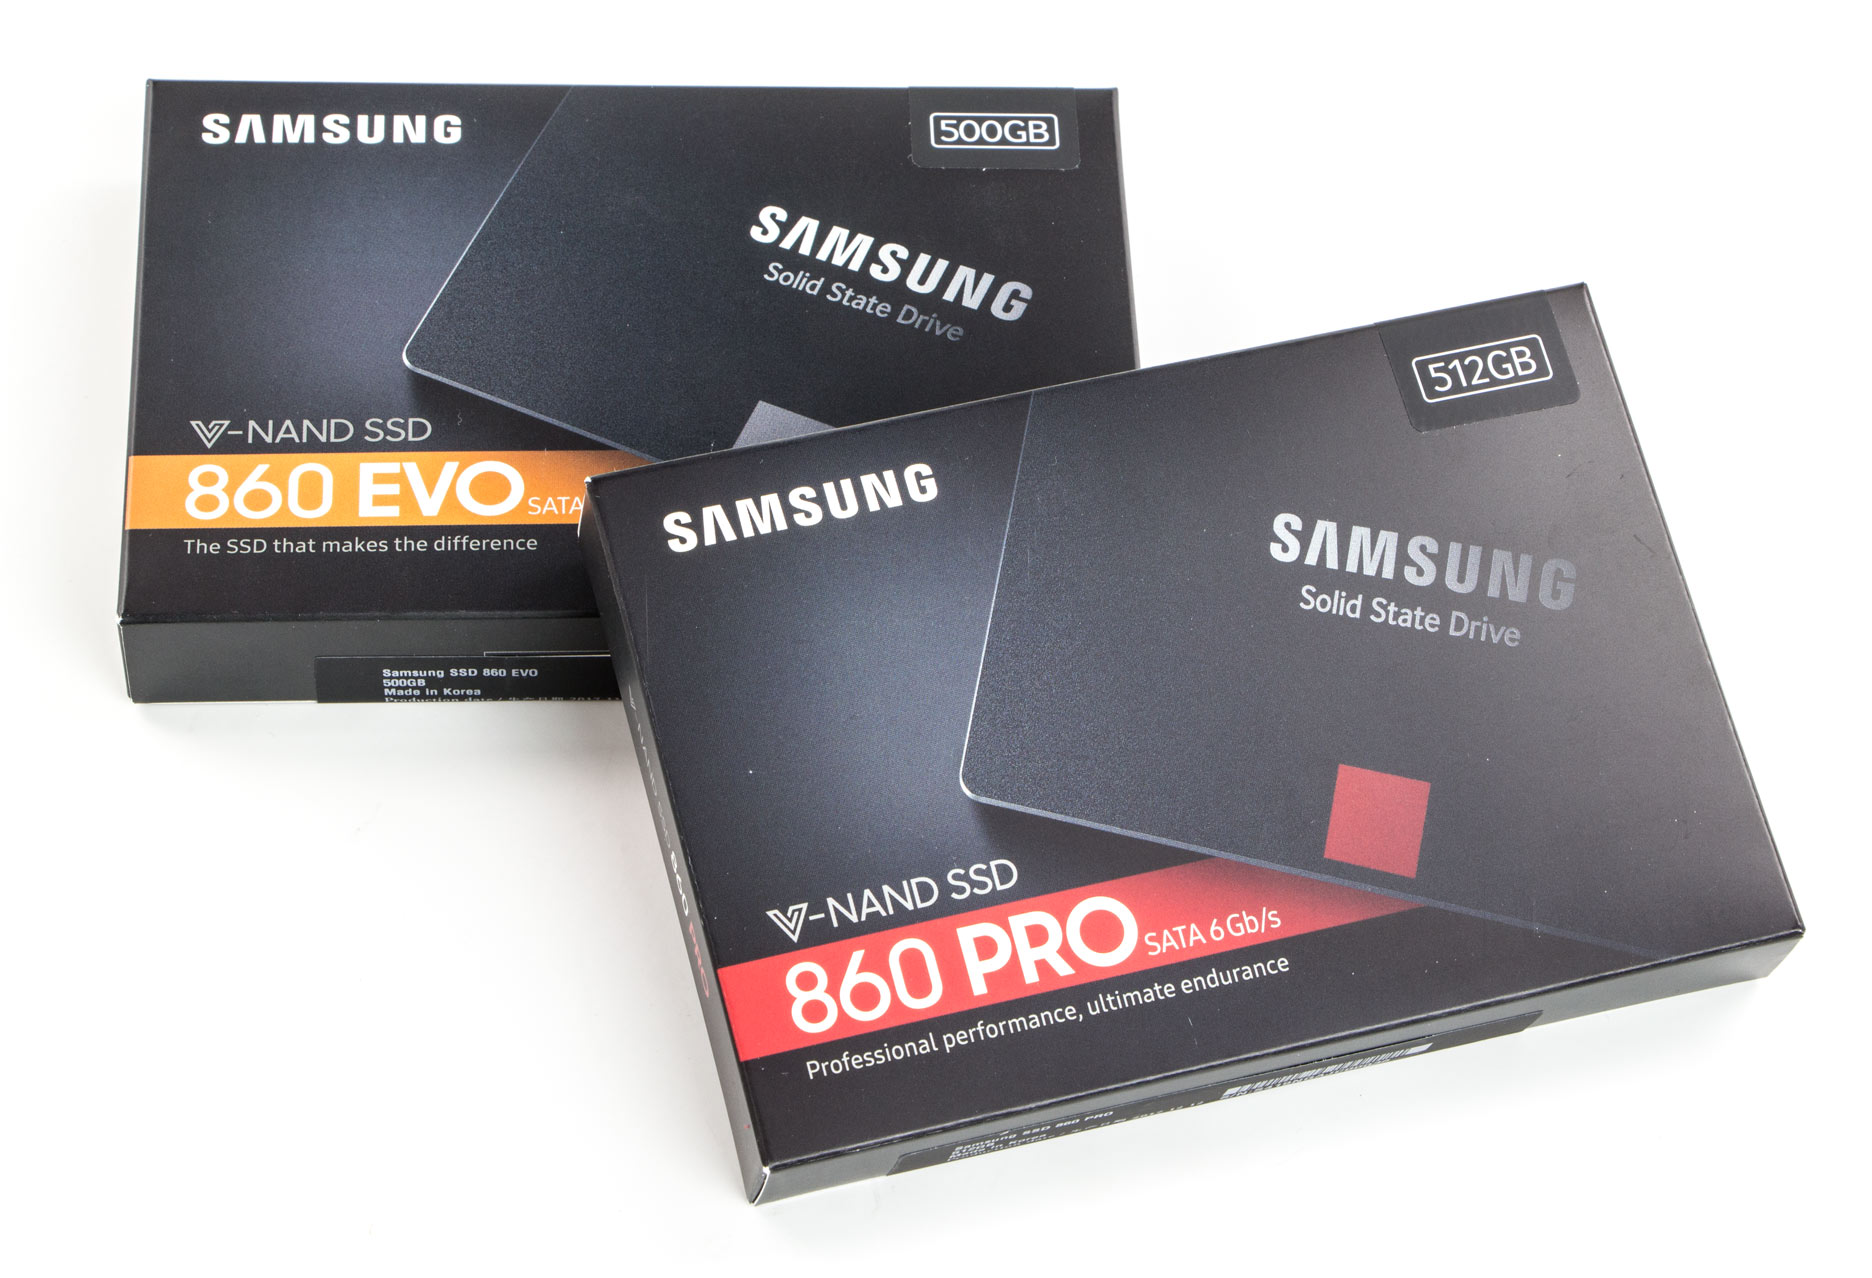 Samsung Ssd 860 Evo Отзывы